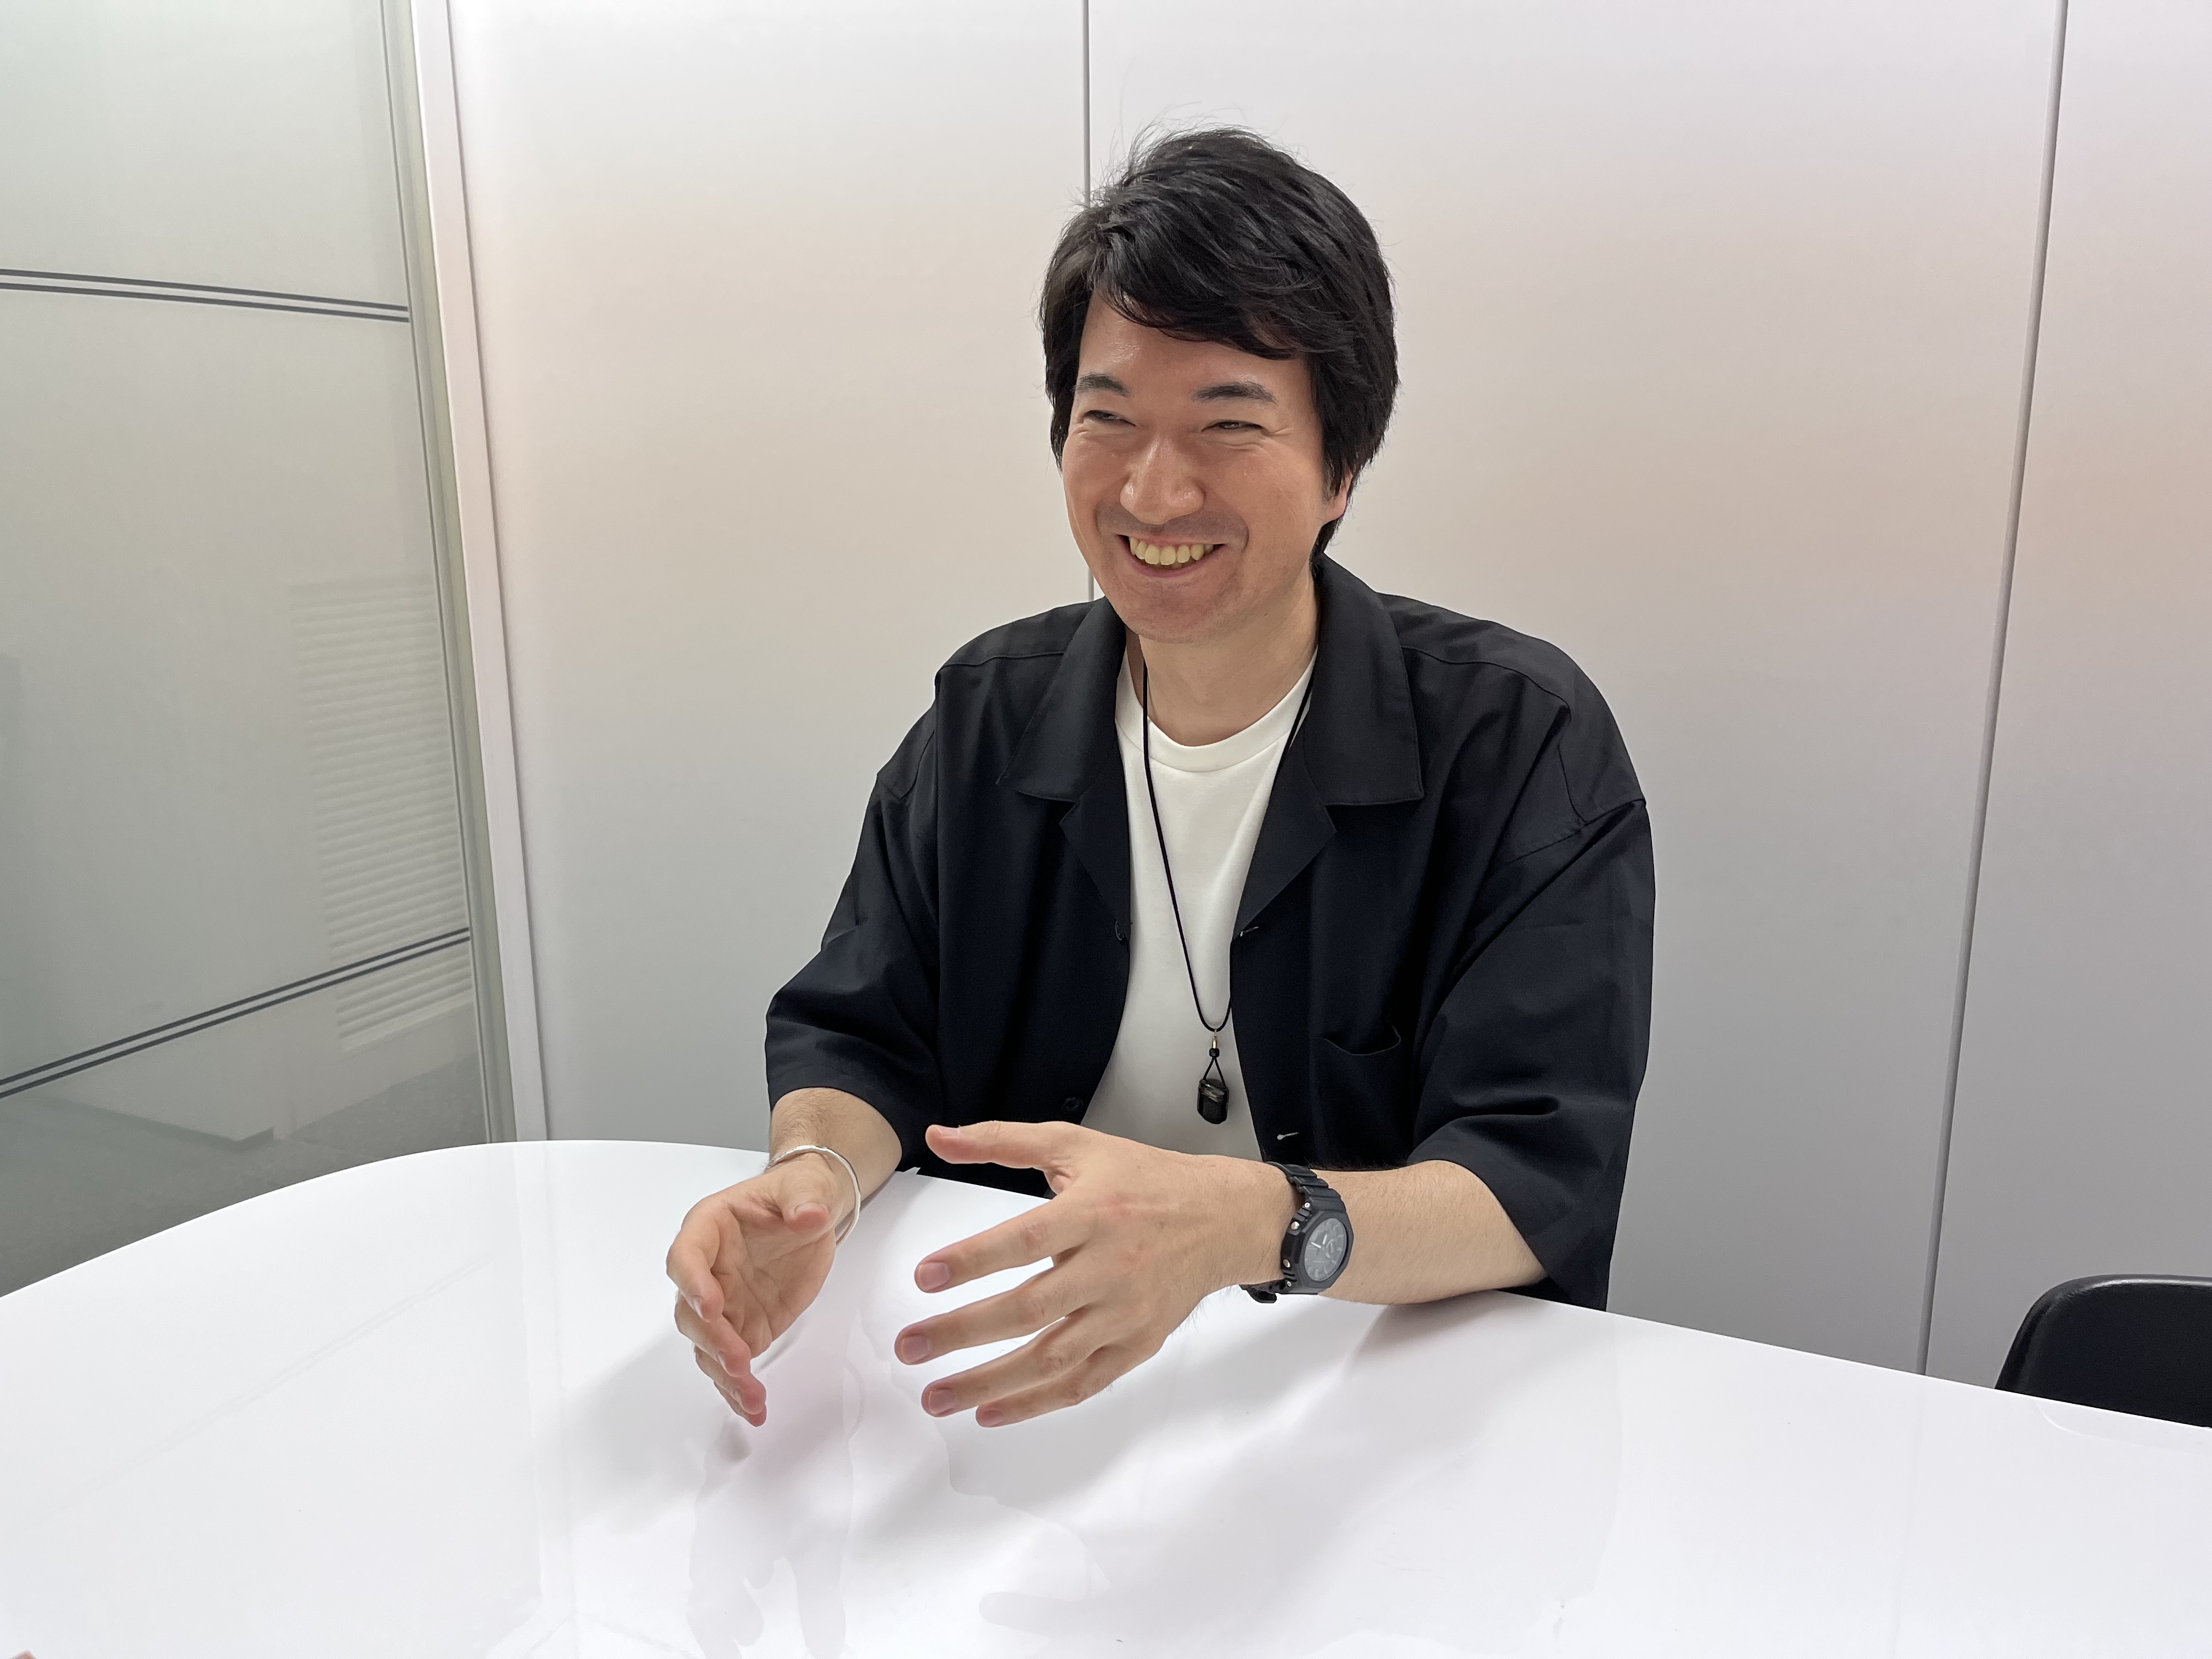 代表取締役社長　本城 嘉太郎
ゲームに魅せられ、ゲームに用いられている技術や最先端のVR技術を活用して世の中に価値を生み出そうとしている。